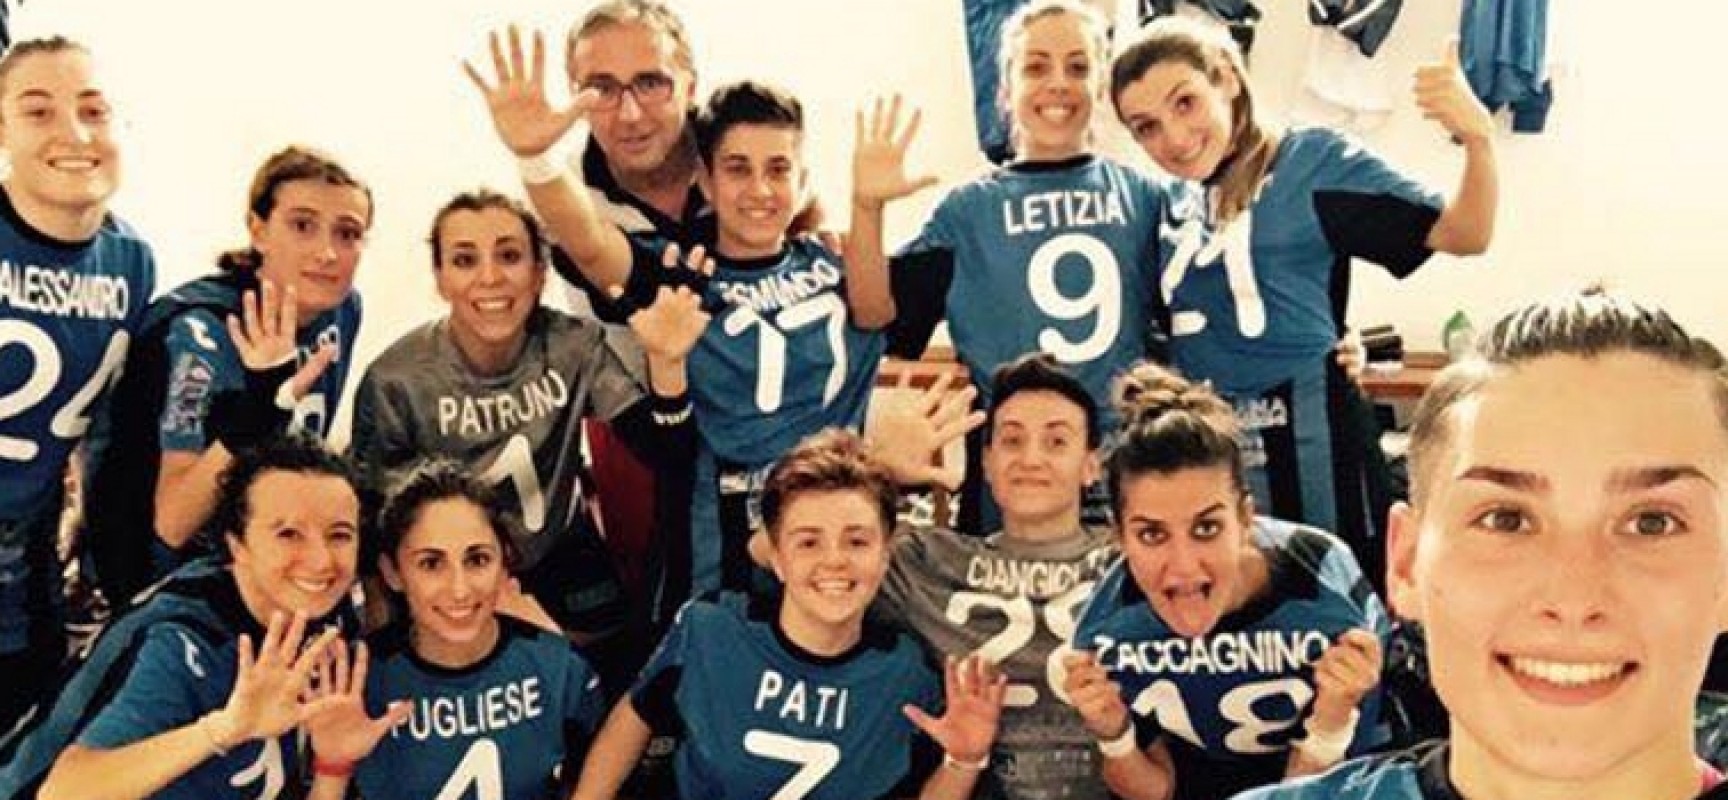 Arcadia sconfitta con onore dalla Lazio, vittoria in rimonta per il Futsal Bisceglie/CLASSIFICHE